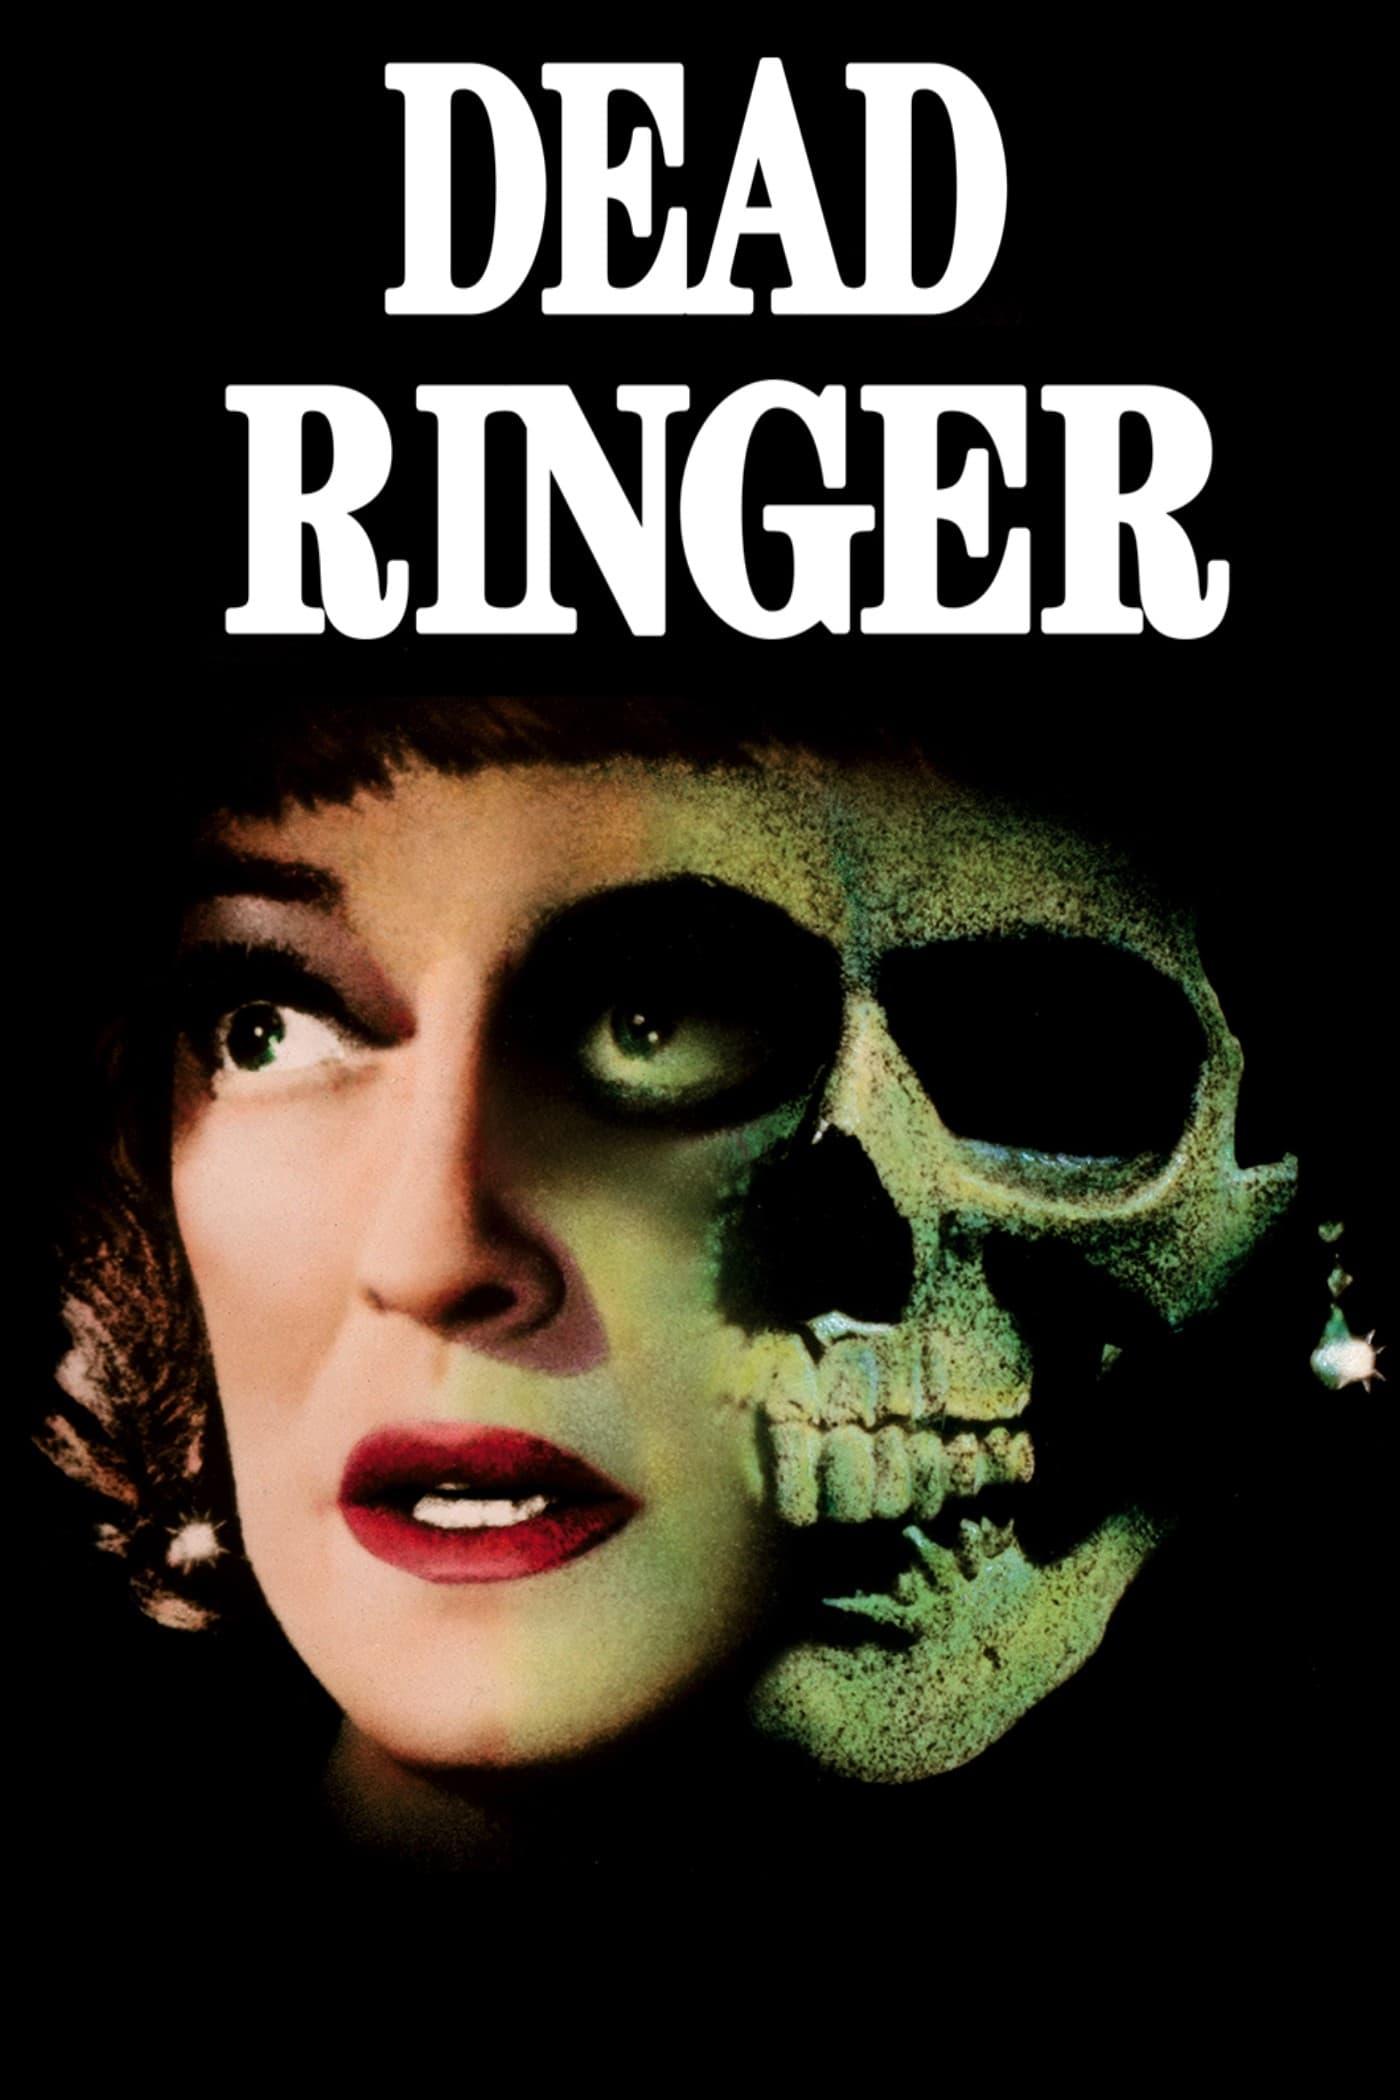 Dead Ringer poster